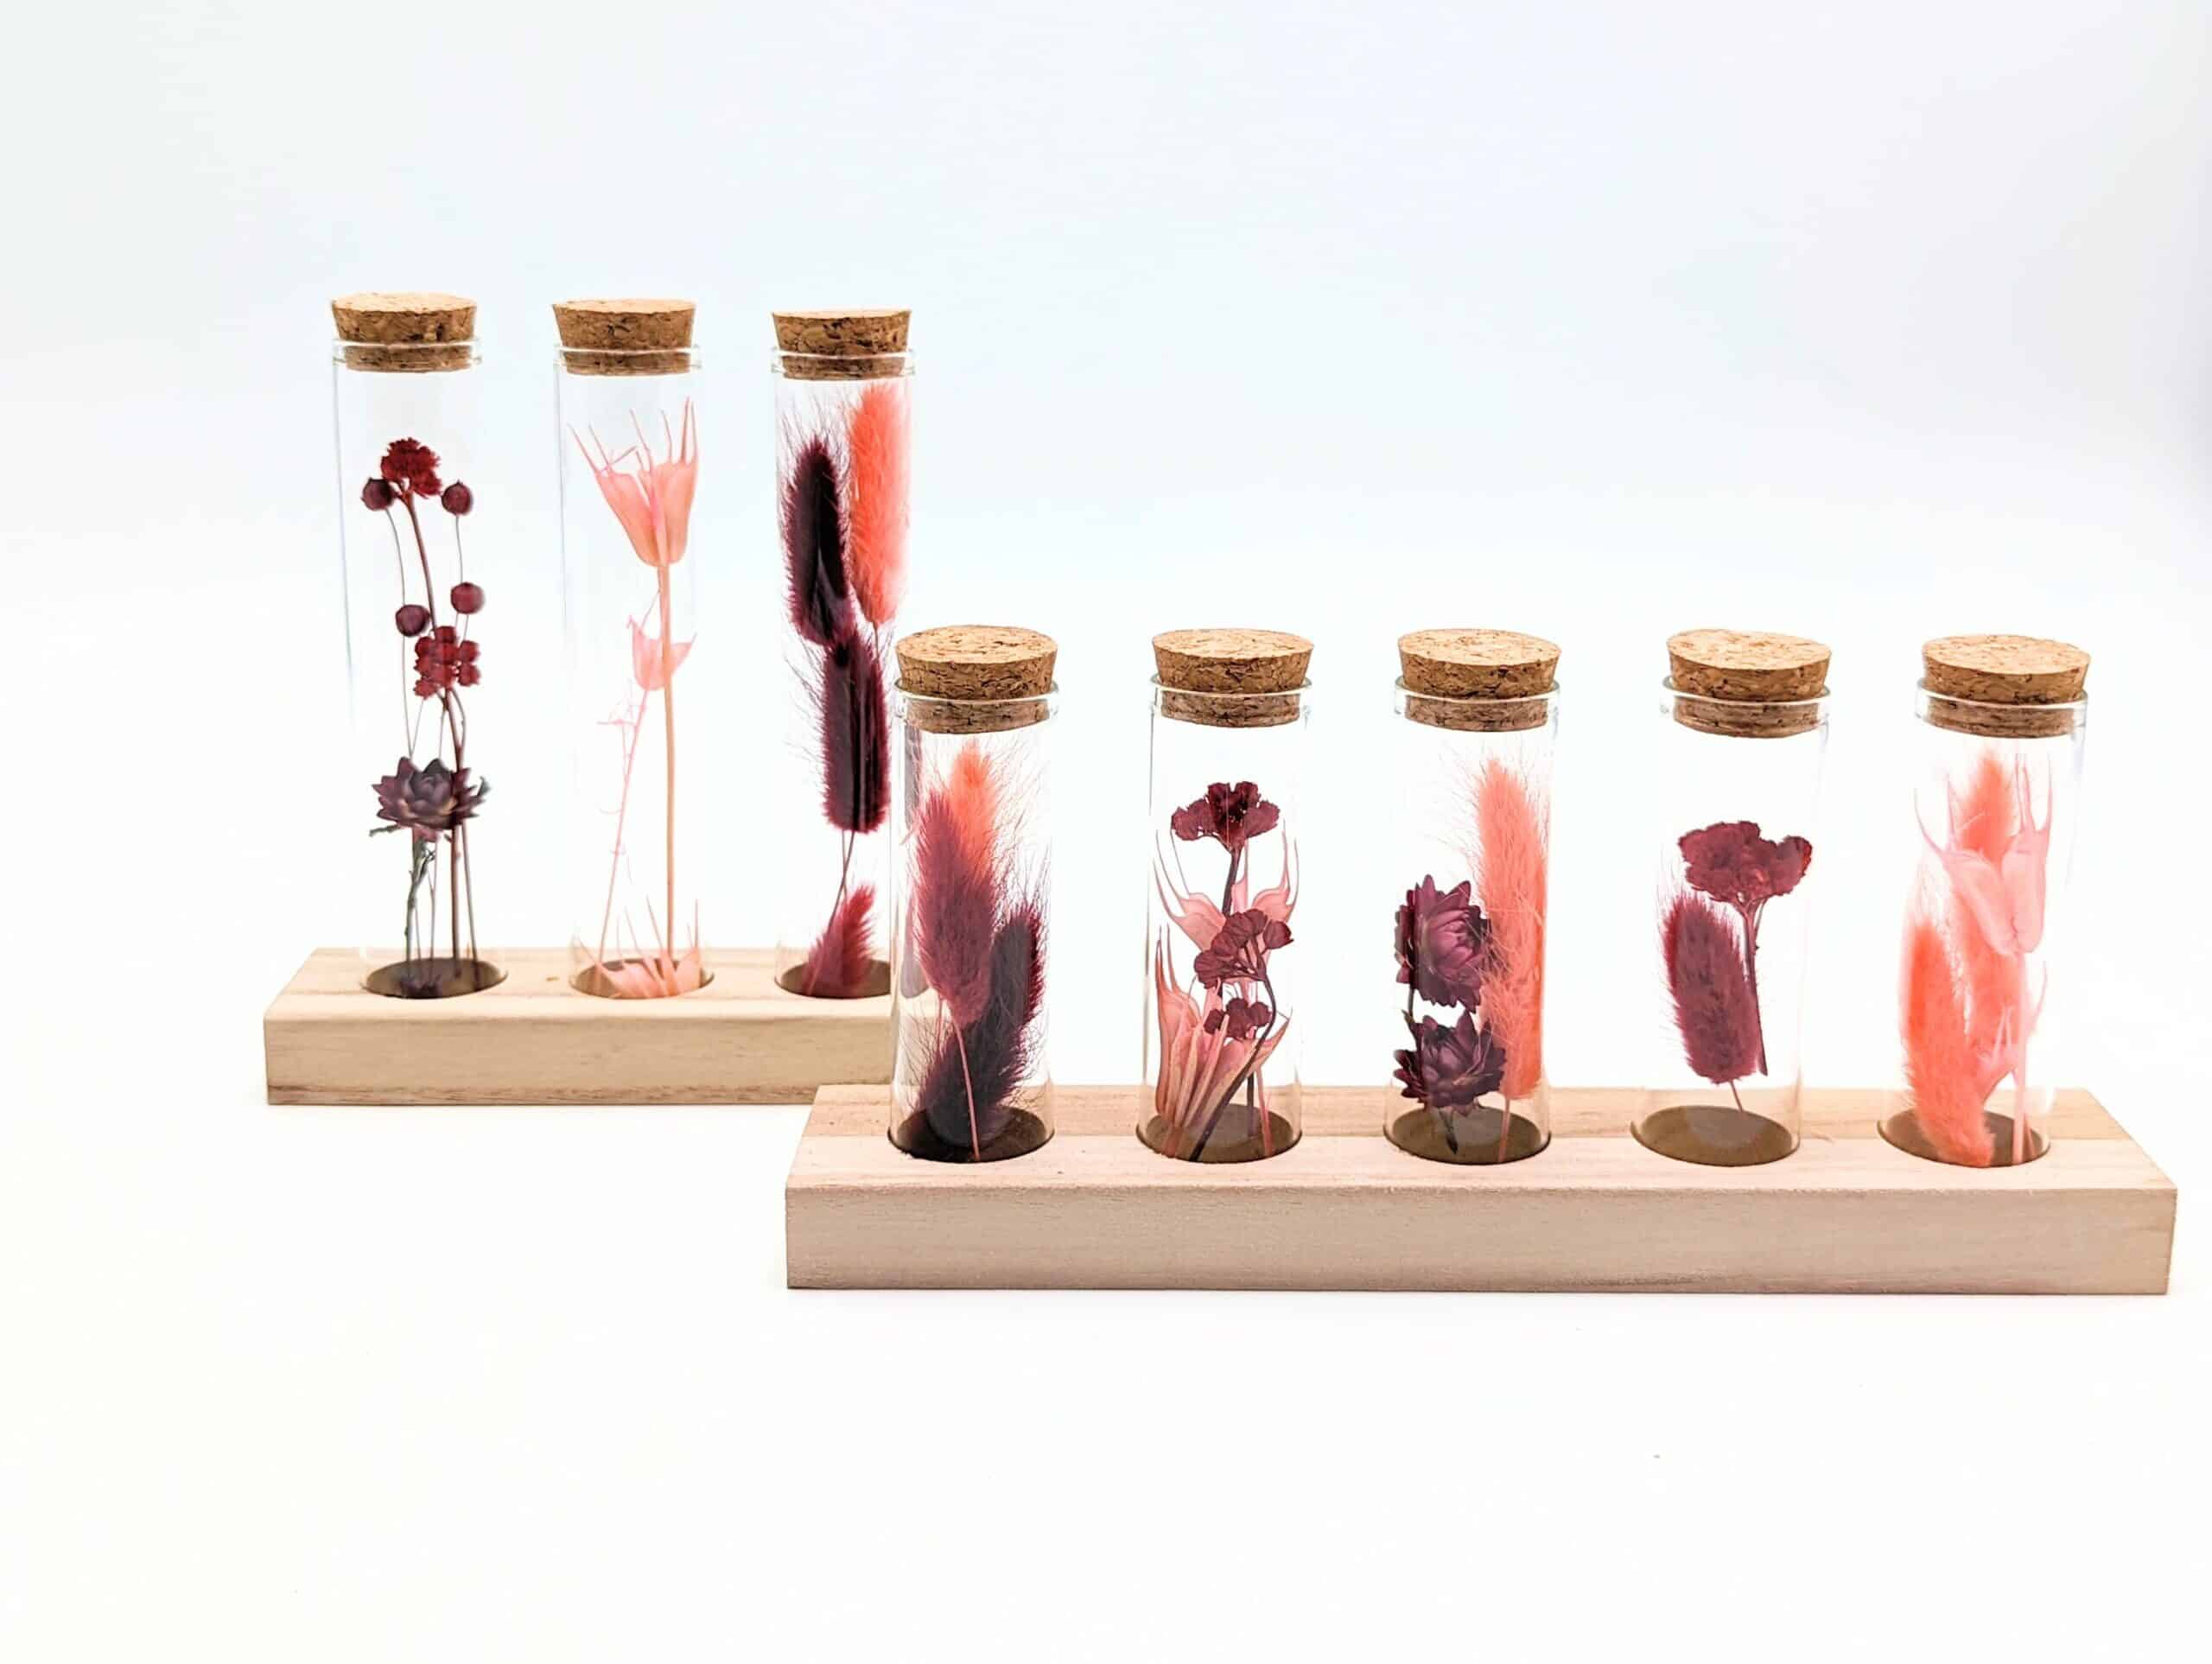 Eprouvette fleurs séchées rouge grenat, 3 ou 5 petits tubes en verre avec fleurs séchées à l'intérieur sur support en bois, fiole en verre avec bouchon en liège